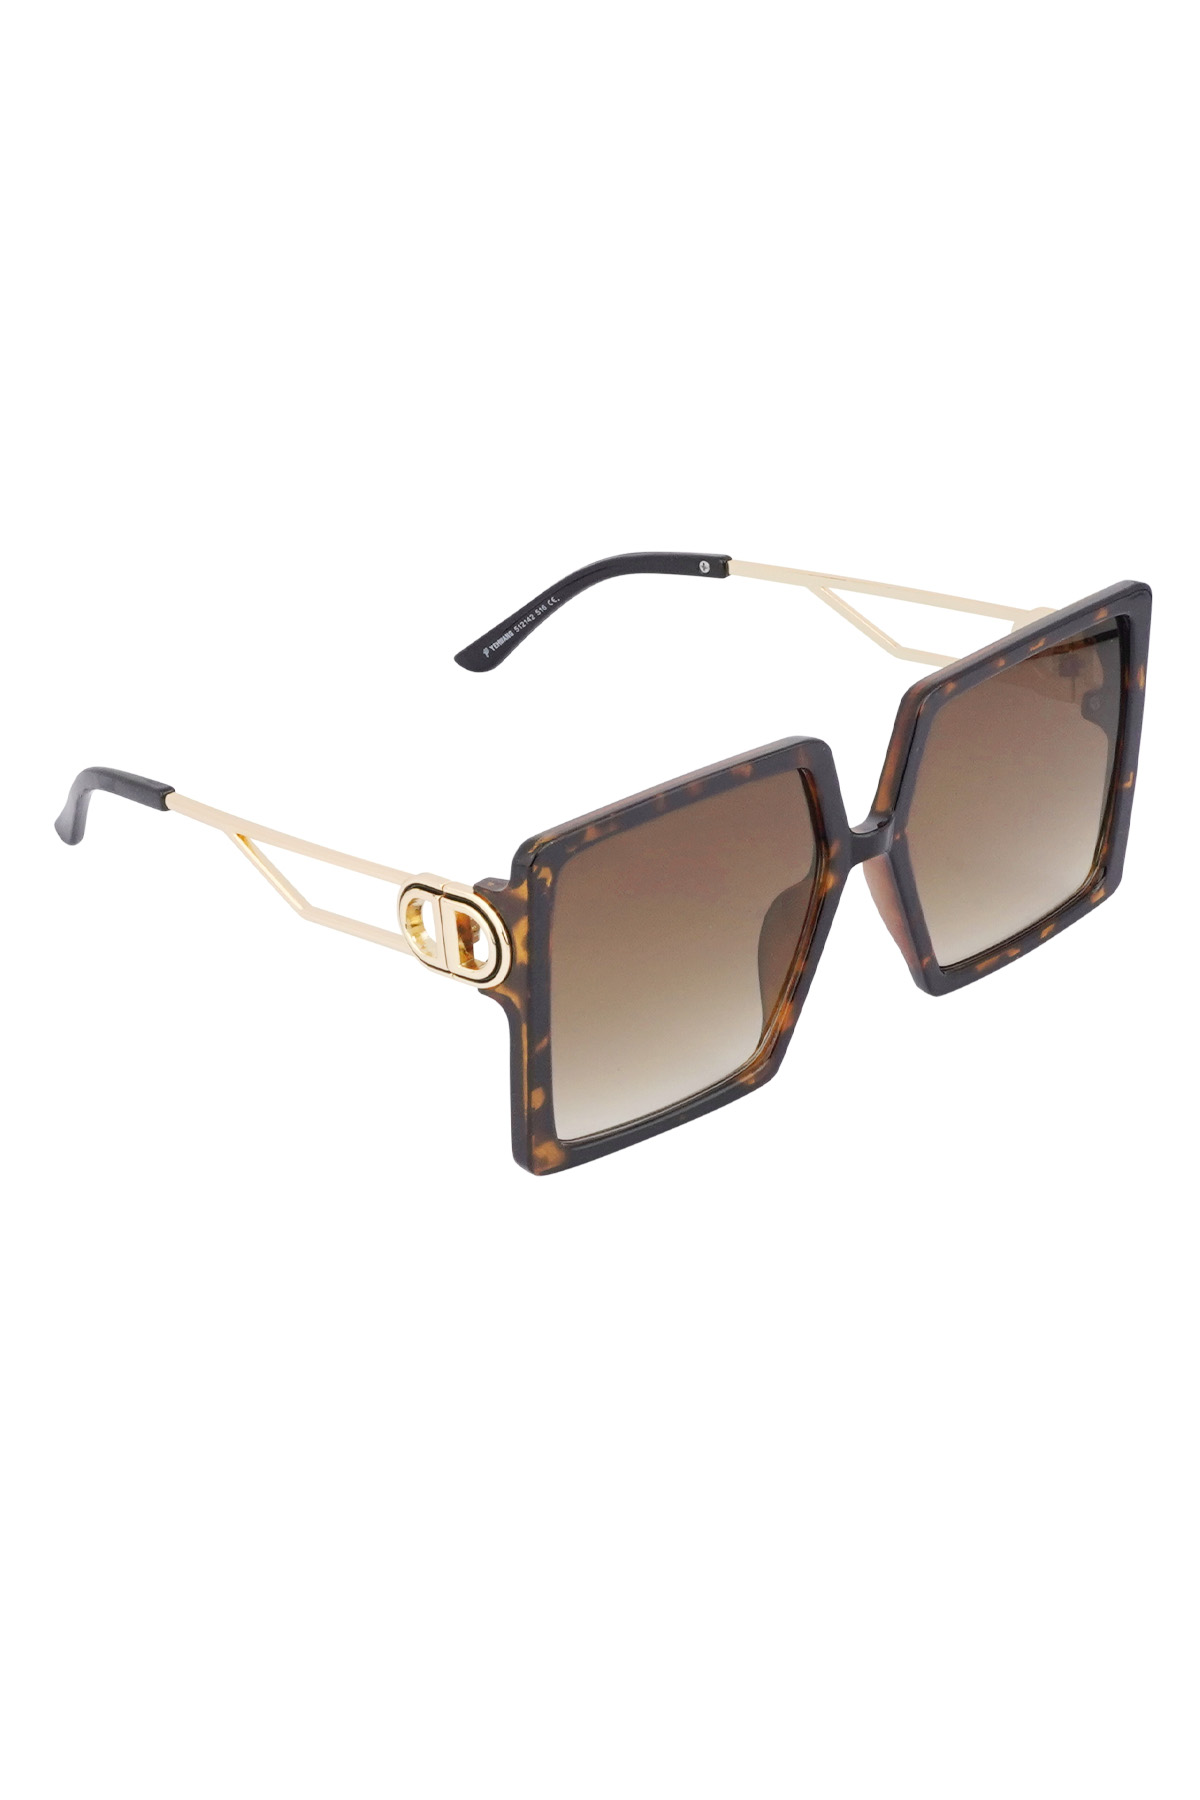 Summer statement sunglasses - brown 